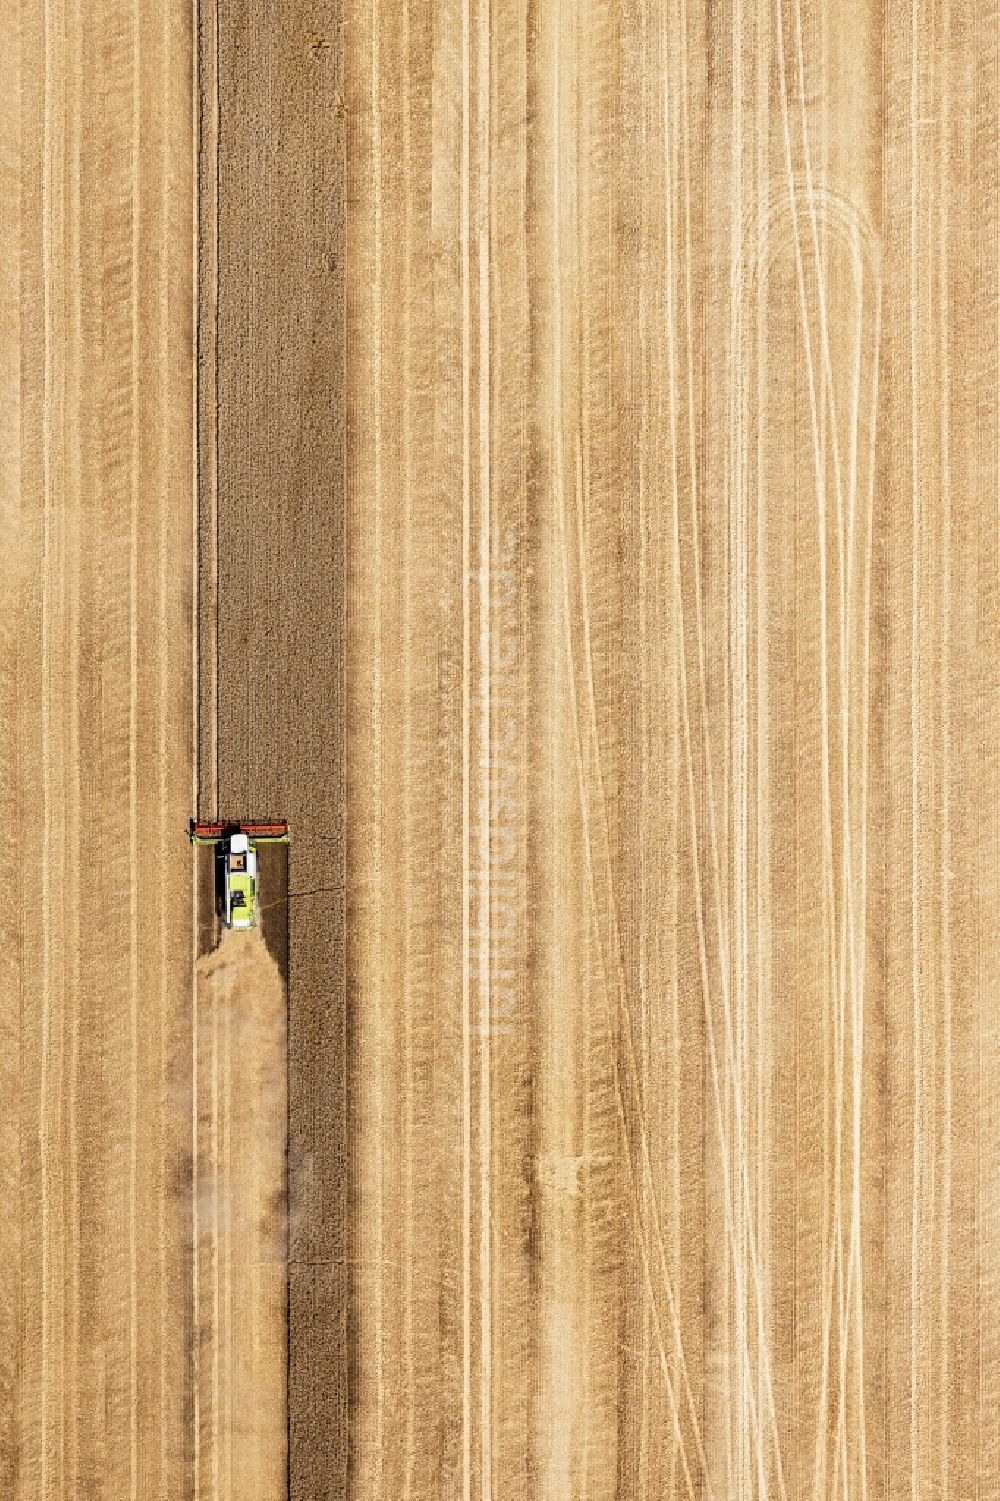 Senkrecht-Luftbild Bad Düben - Senkrechtluftbild Ernteeinsatz auf landwirtschaftlichen Feldern in Bad Düben im Bundesland Sachsen, Deutschland